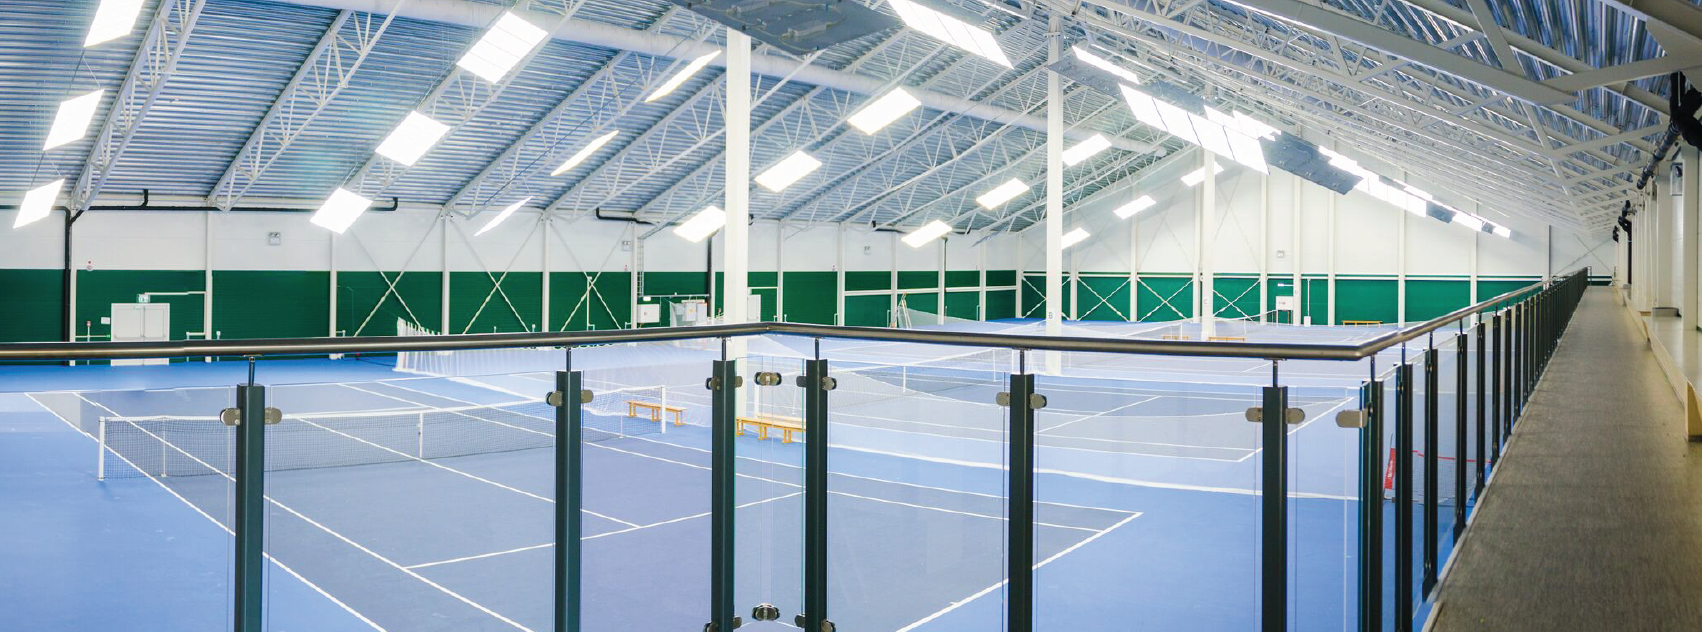 Tre innendørs tennisbaner